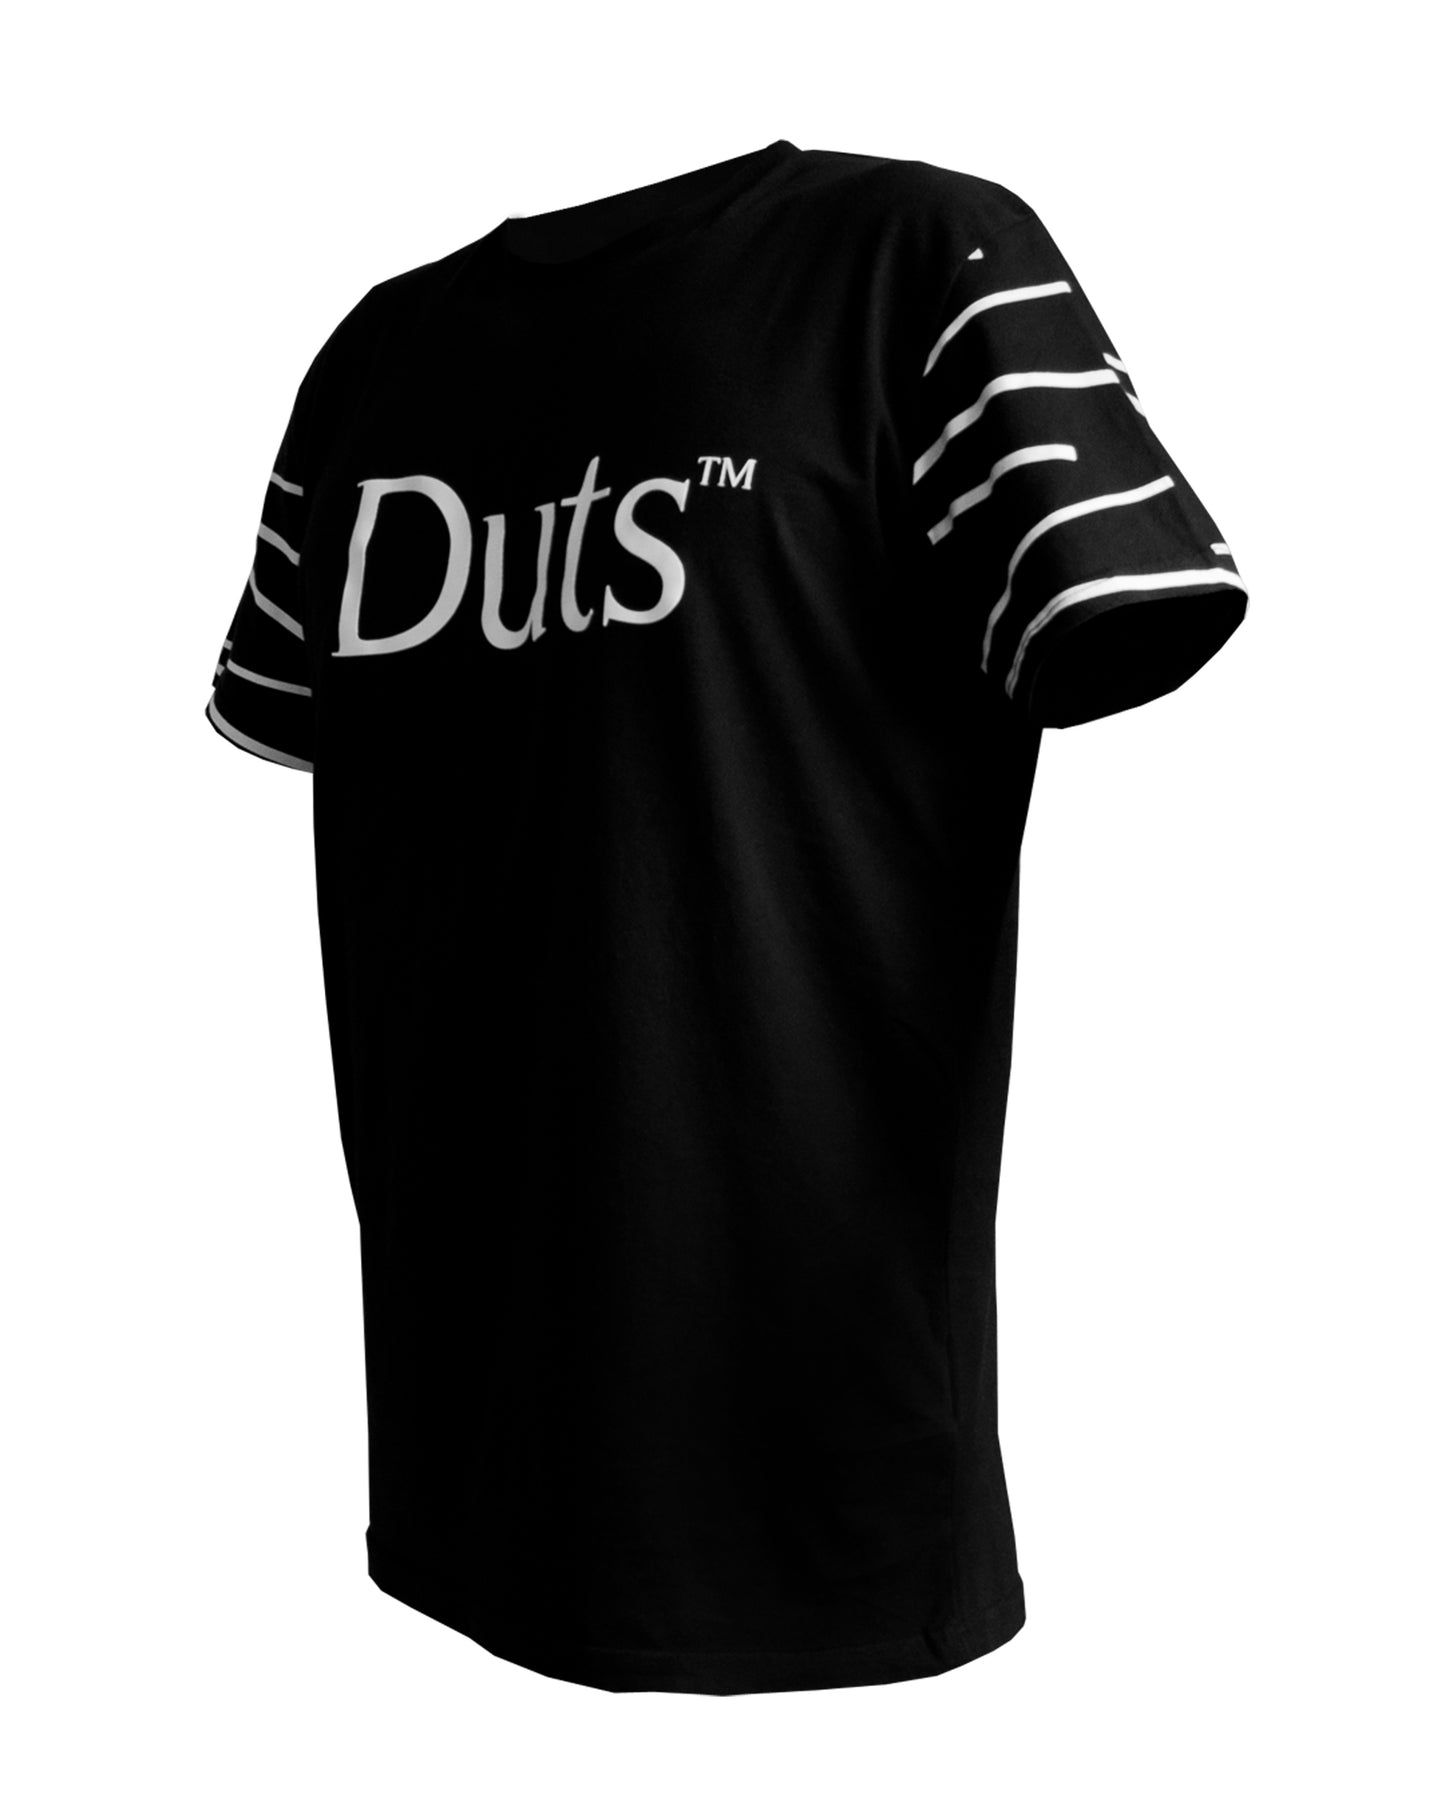 Duts T-shirt : White Stripes :